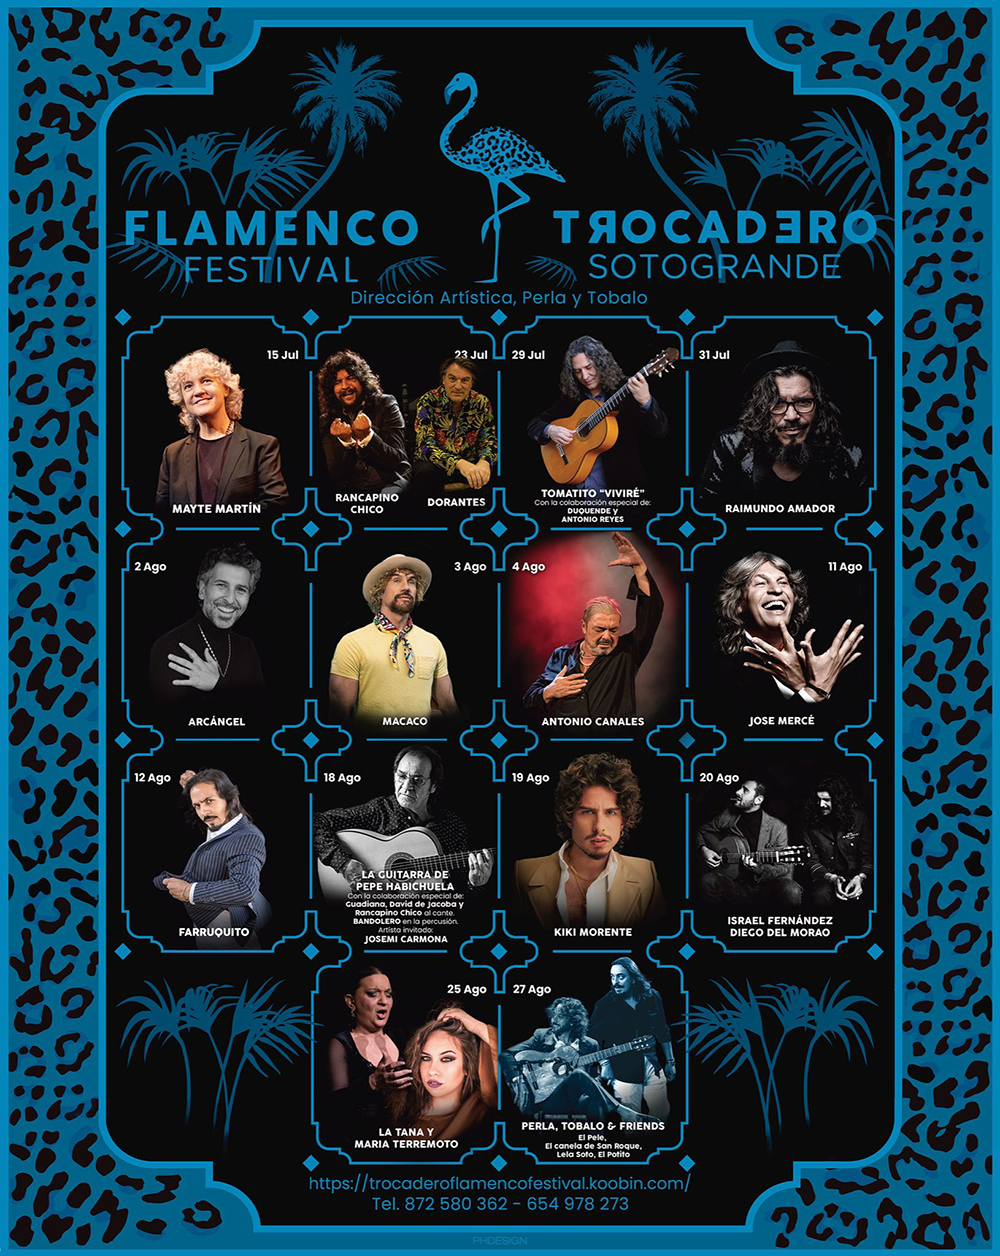 Flamenco Festival Trocadero